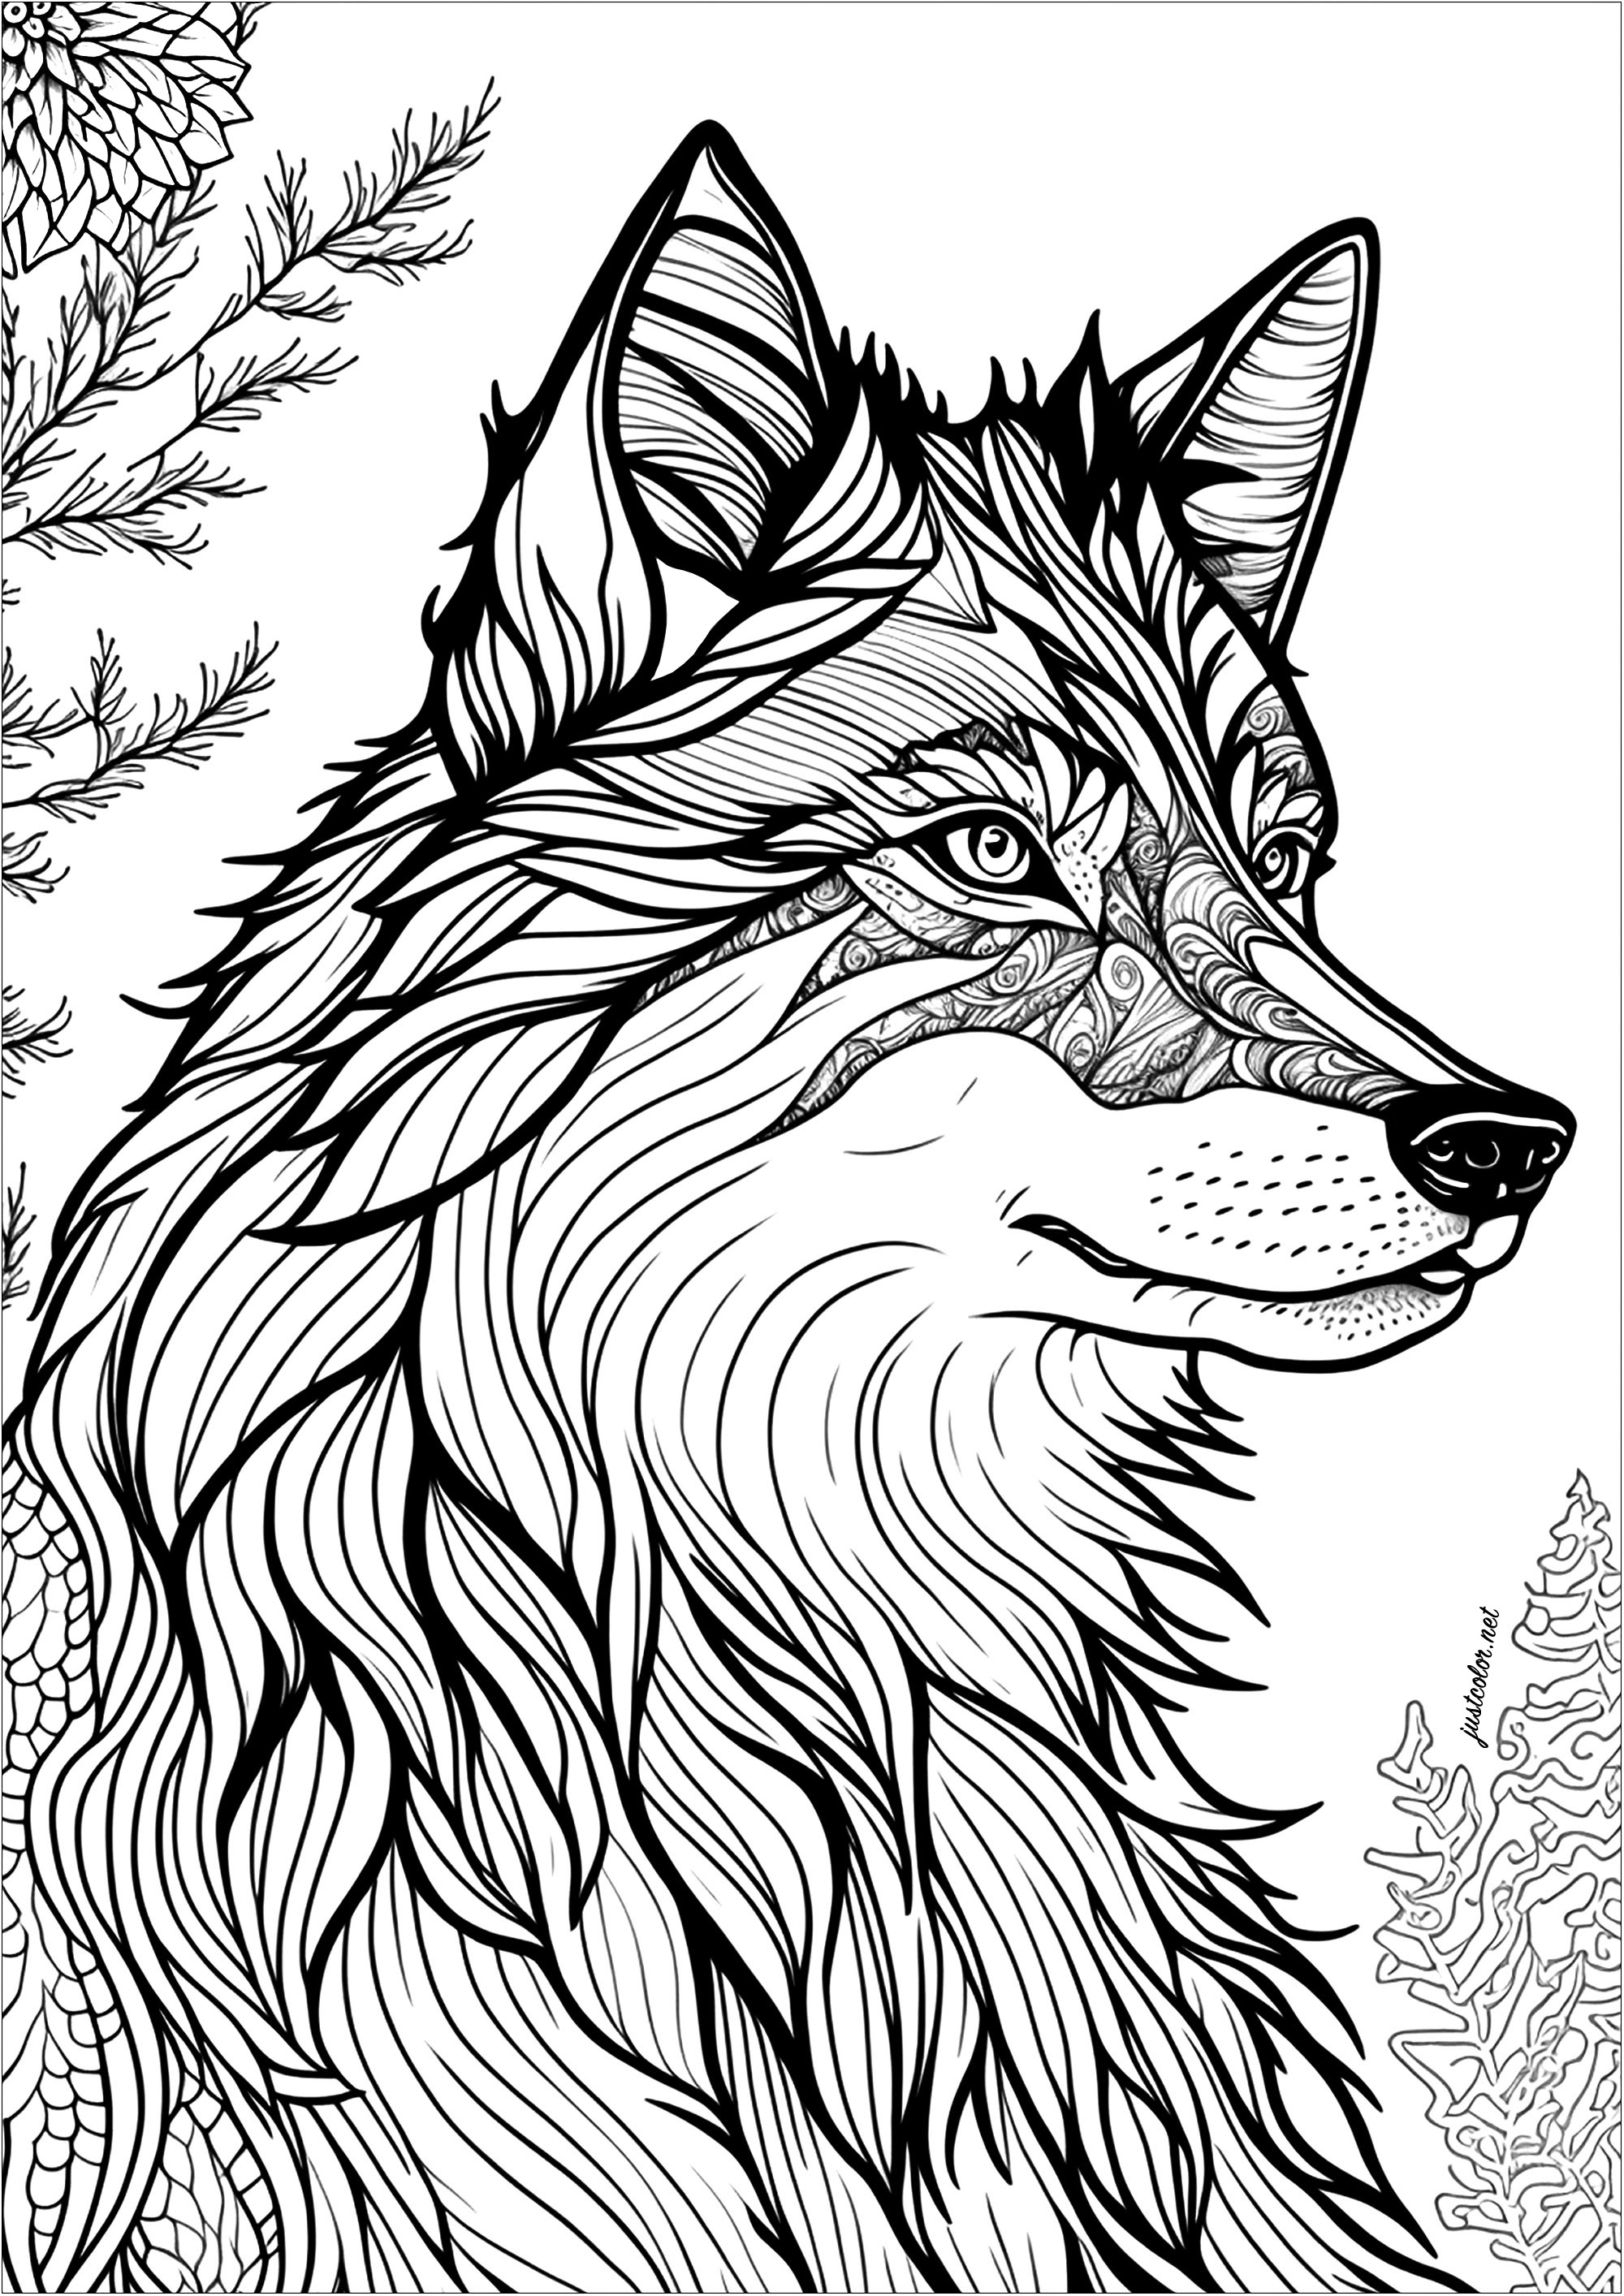 Colorazione di un lupo, visto di profilo. Gli occhi di questo lupo sono particolarmente espressivi, lo sguardo accattivante e misterioso.